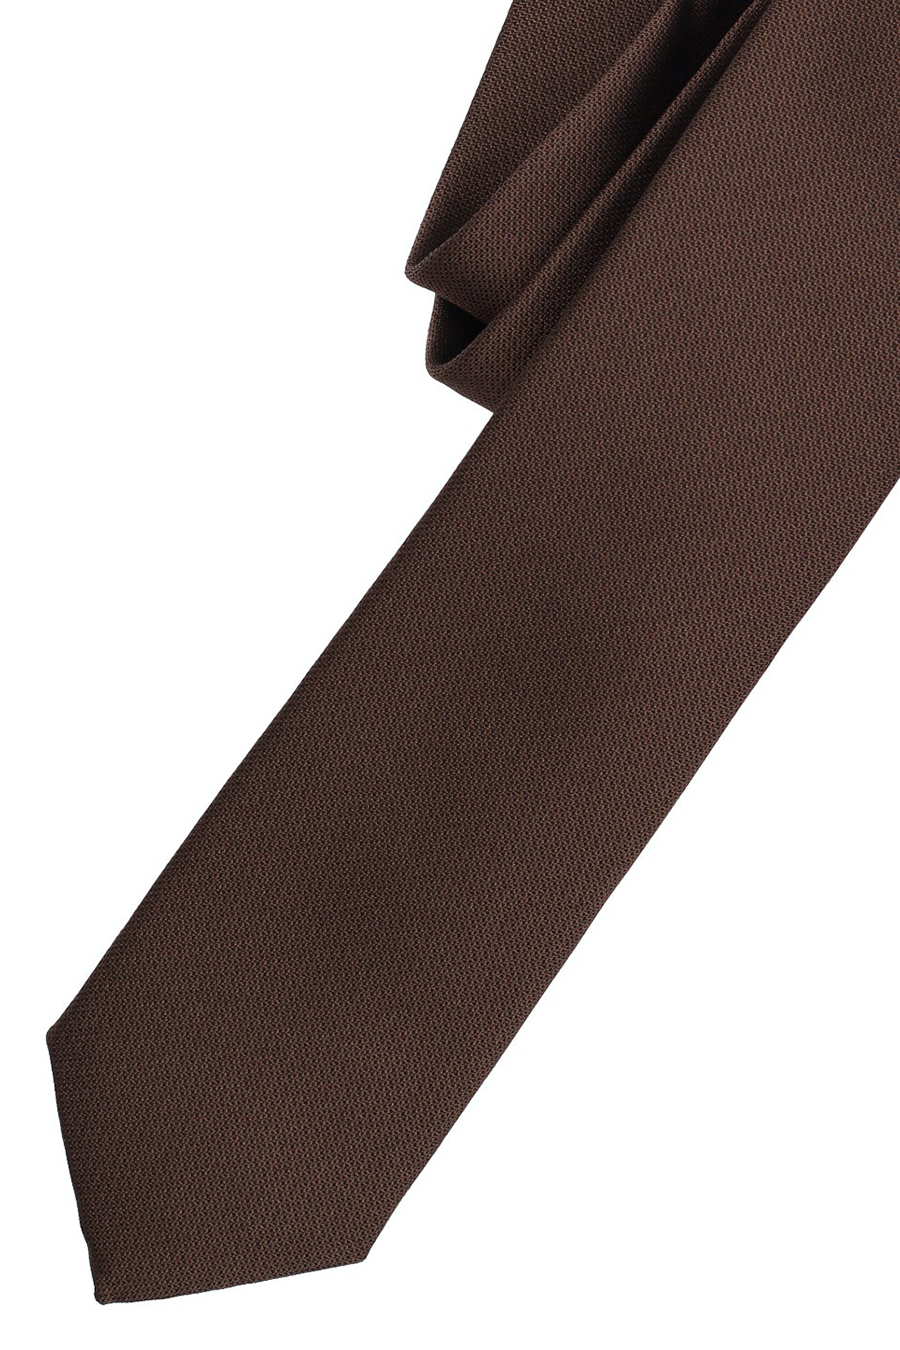 VENTI Krawatte aus Seide und Polyester 5 cm breit braun | Breite Krawatten